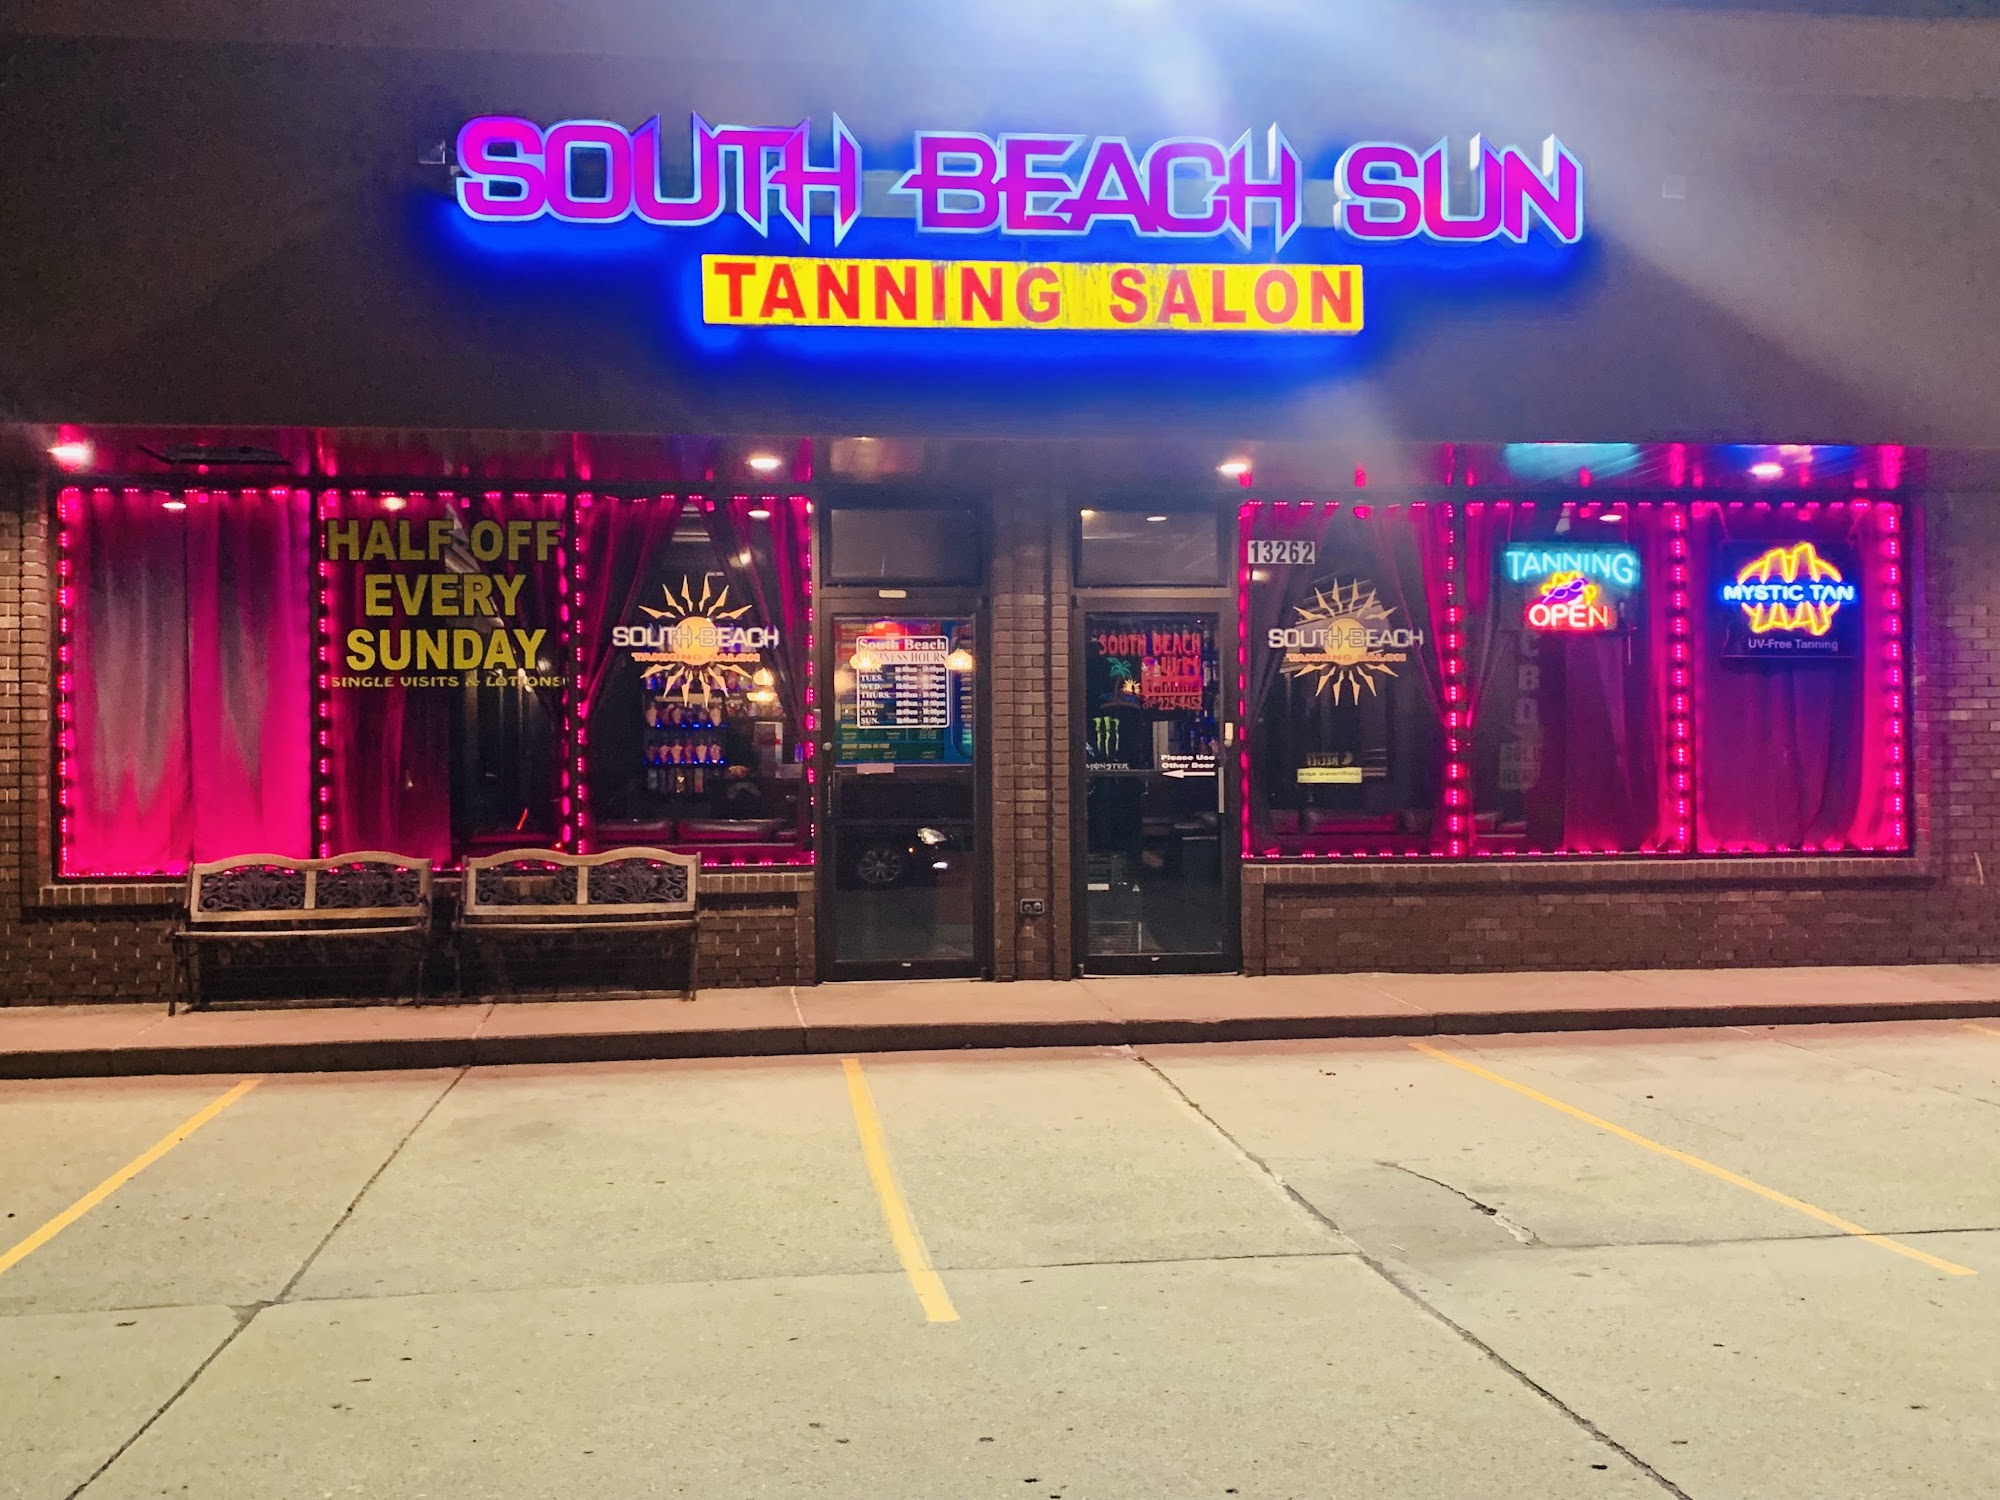 South Beach Sun Tanning Salon